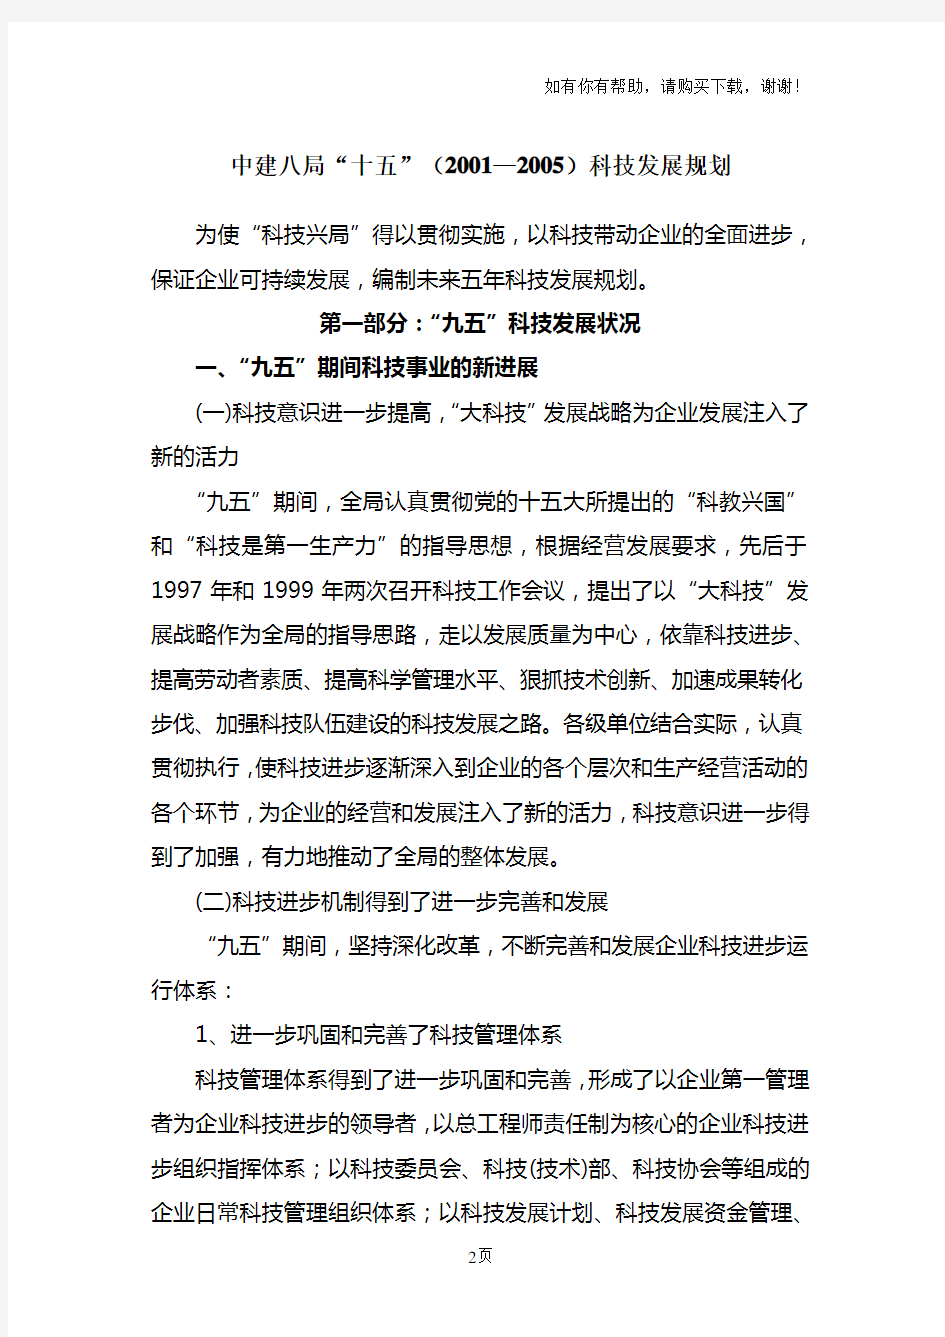 中国建筑第八工程局科技管理制度汇编